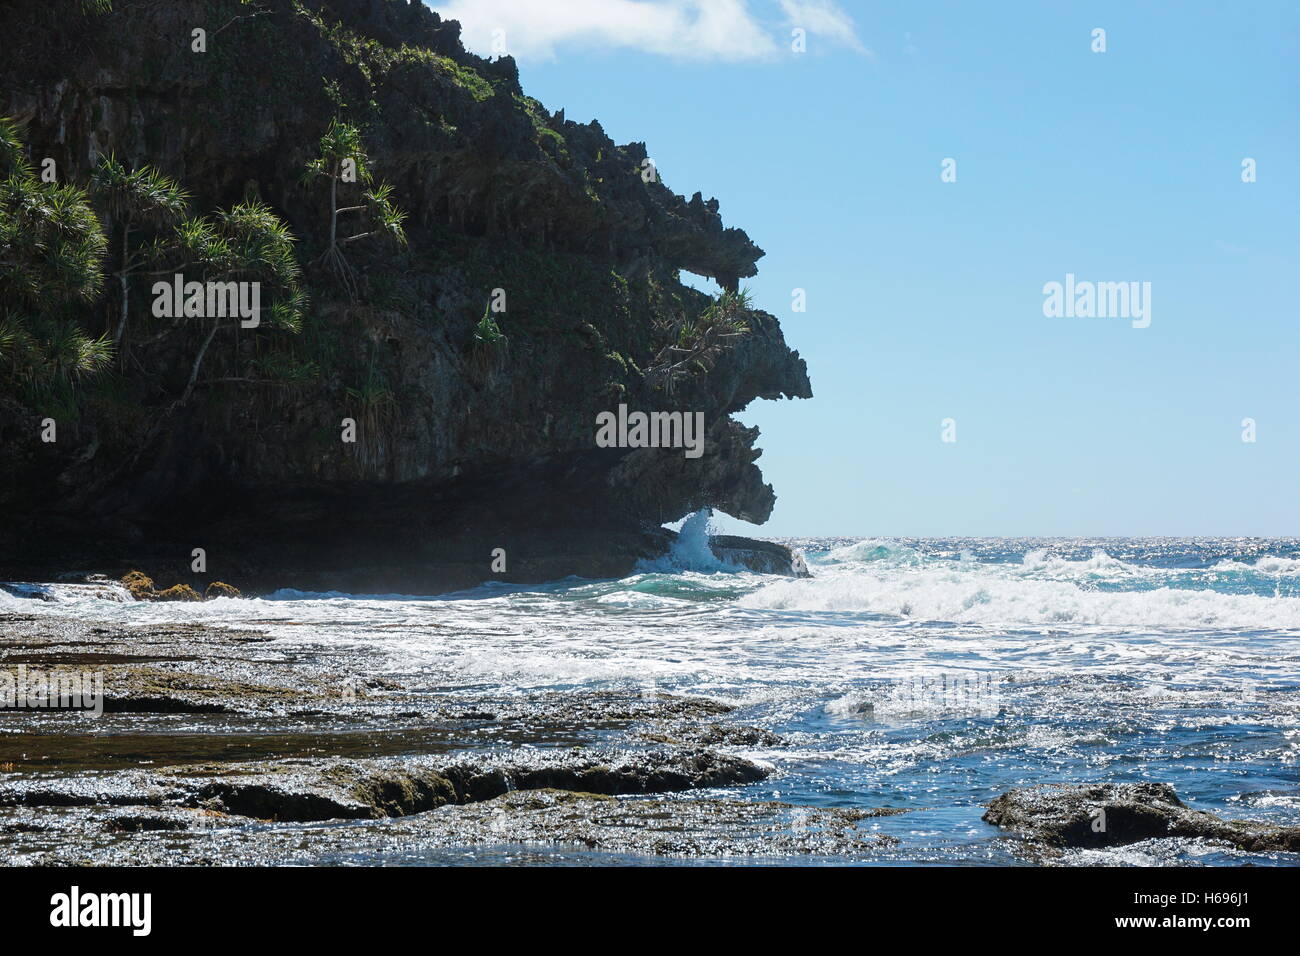 Erodierte Kalksteinfelsen, die aussieht wie ein Monster-Kopf auf der Küste von Rurutu Insel, Pazifik, Austral, Französisch-Polynesien Stockfoto